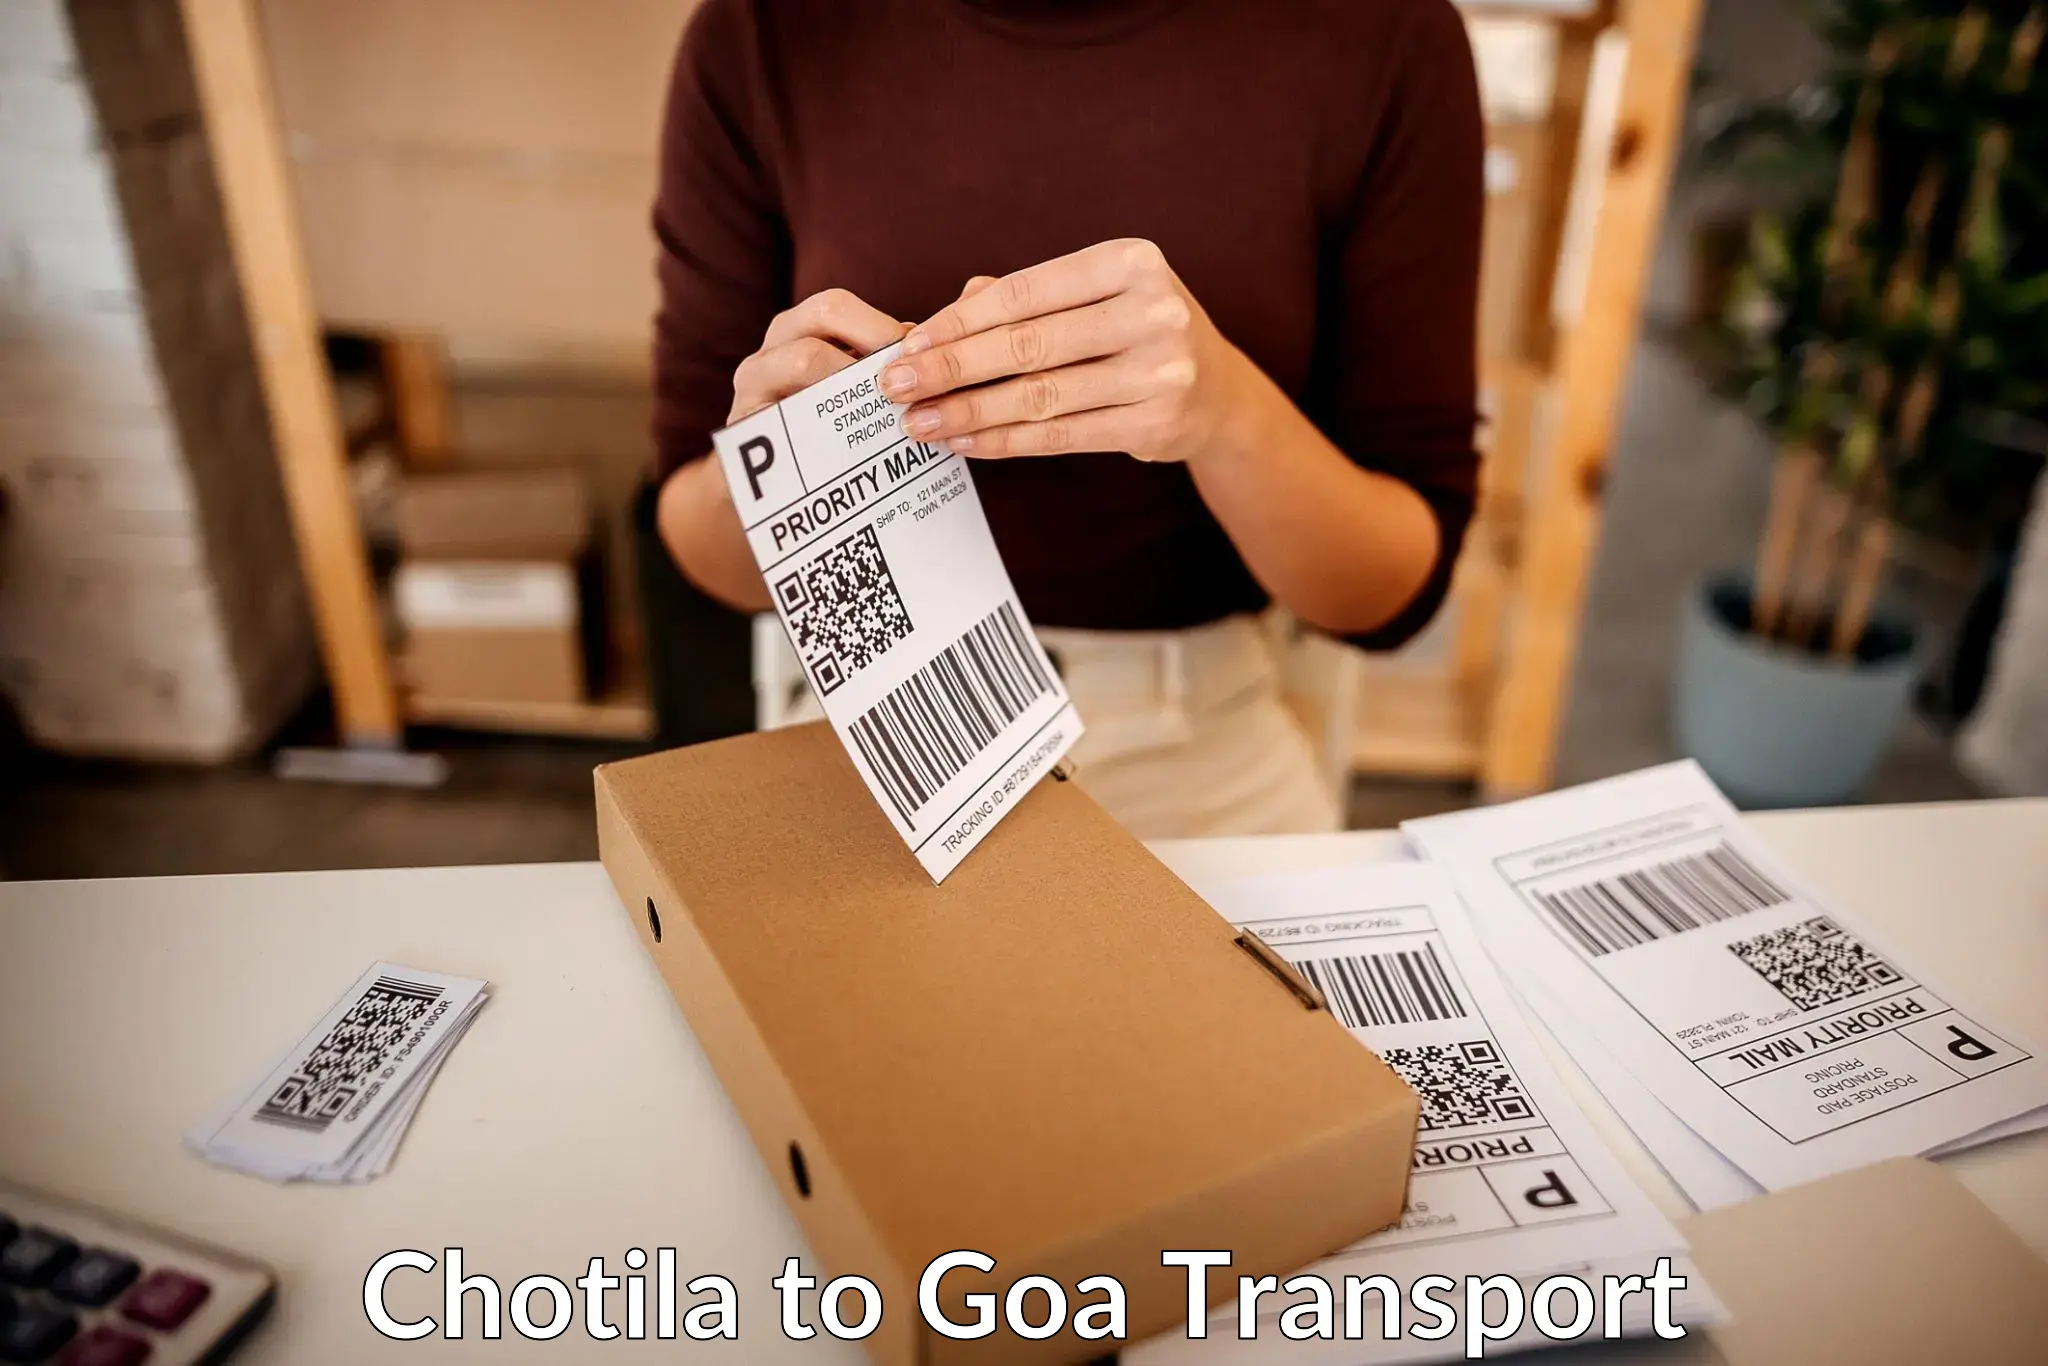 Express transport services Chotila to Mormugao Port